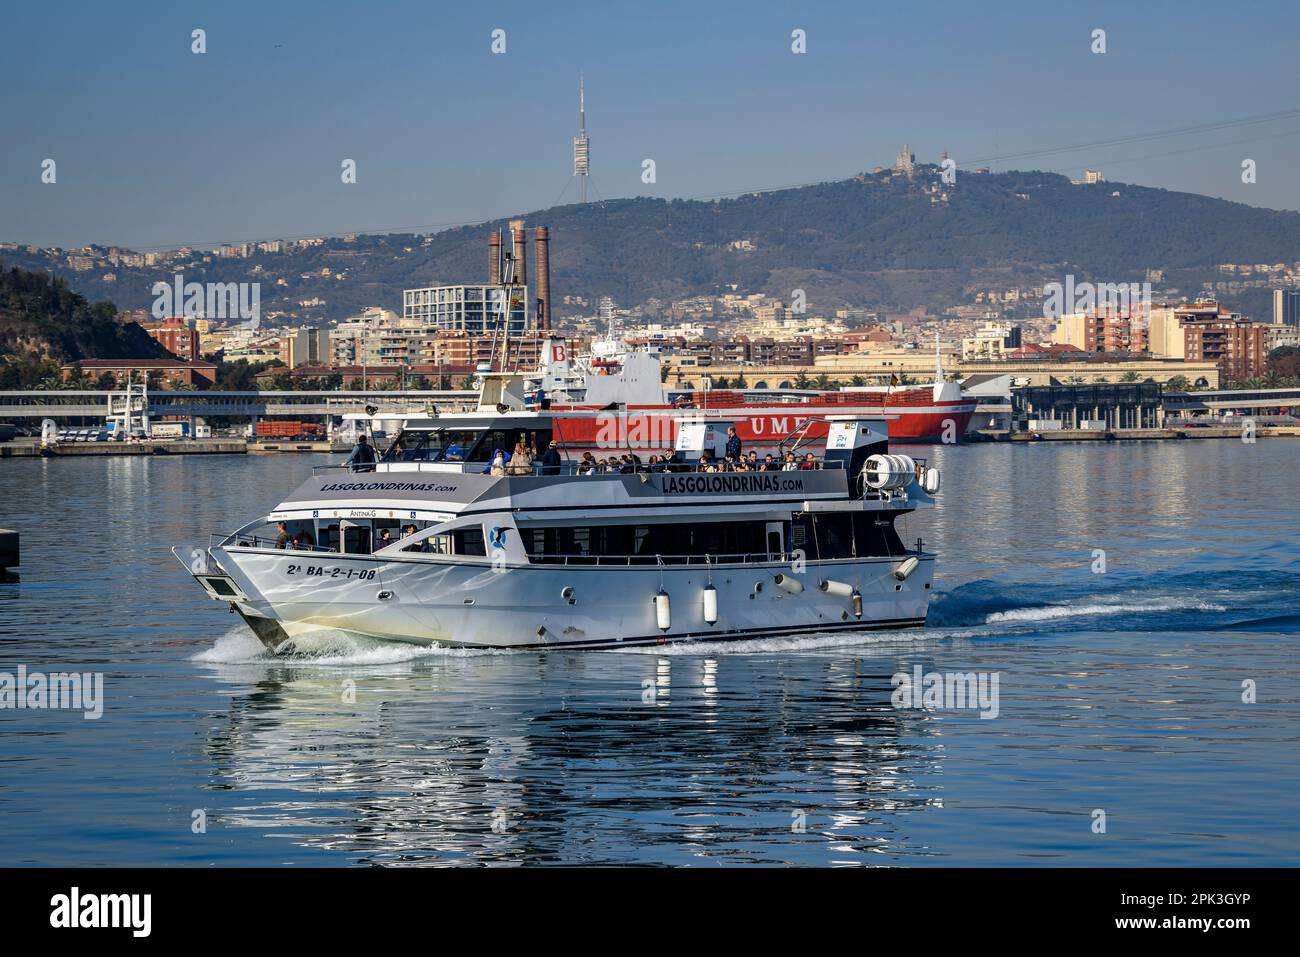 Un bateau de Las Golondrinas naviguant dans les eaux de la mer Méditerranée en face du port de Barcelone (Catalogne, Espagne) Banque D'Images